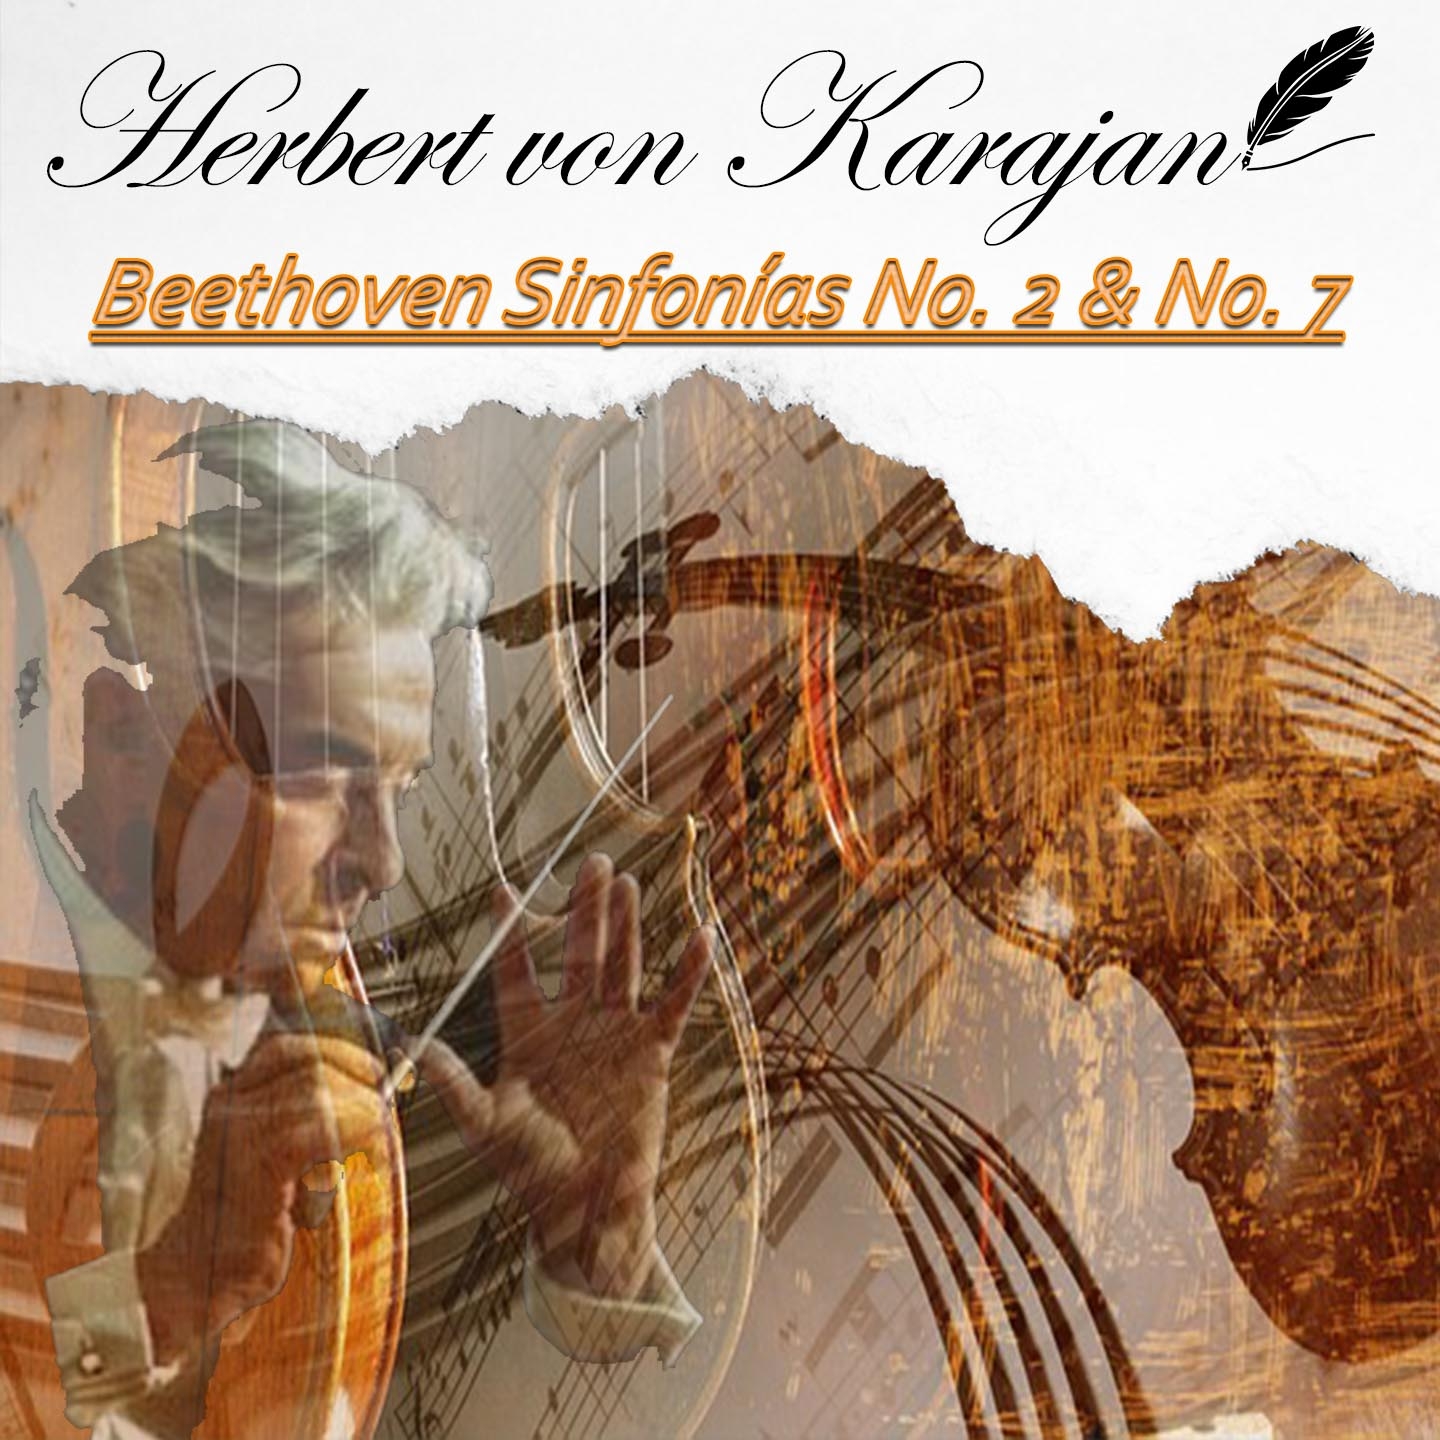 Herbert von Karajan, Beethoven Sinfonías No. 2 & No. 7